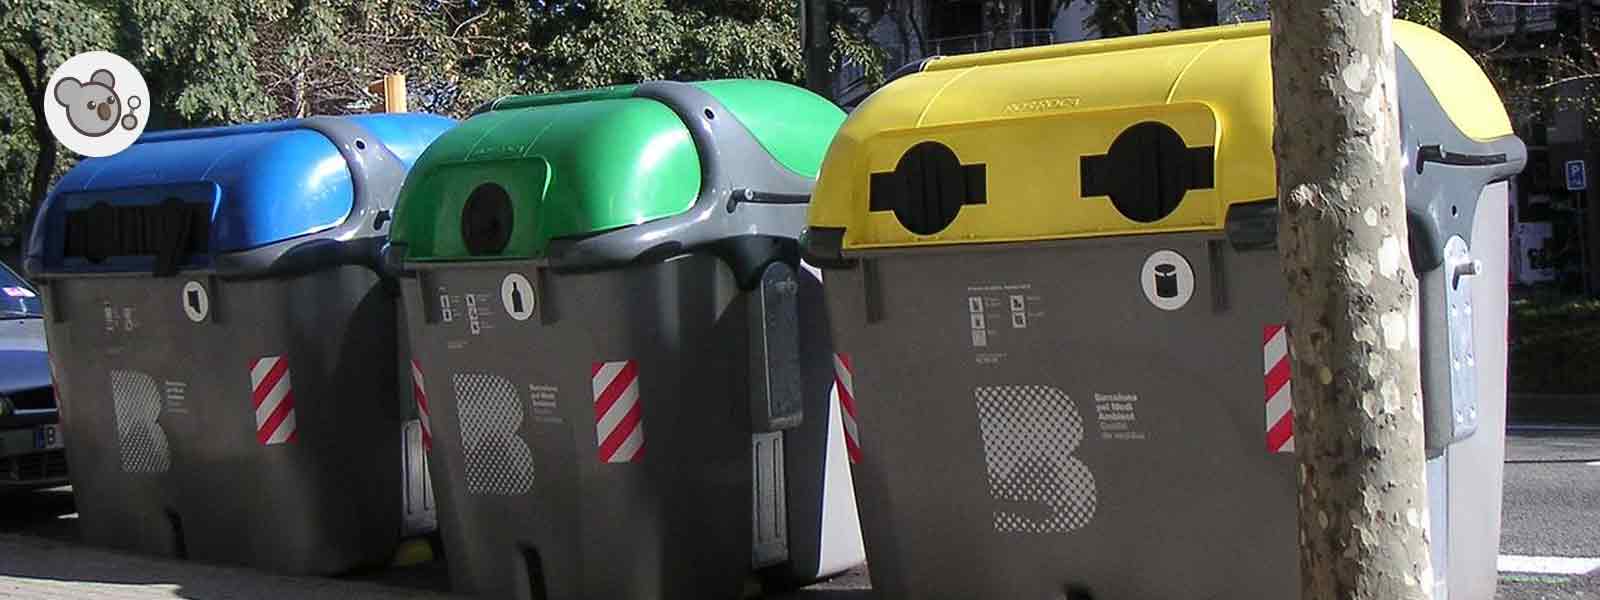 Contenedores de reciclaje: tipos, colores y significado